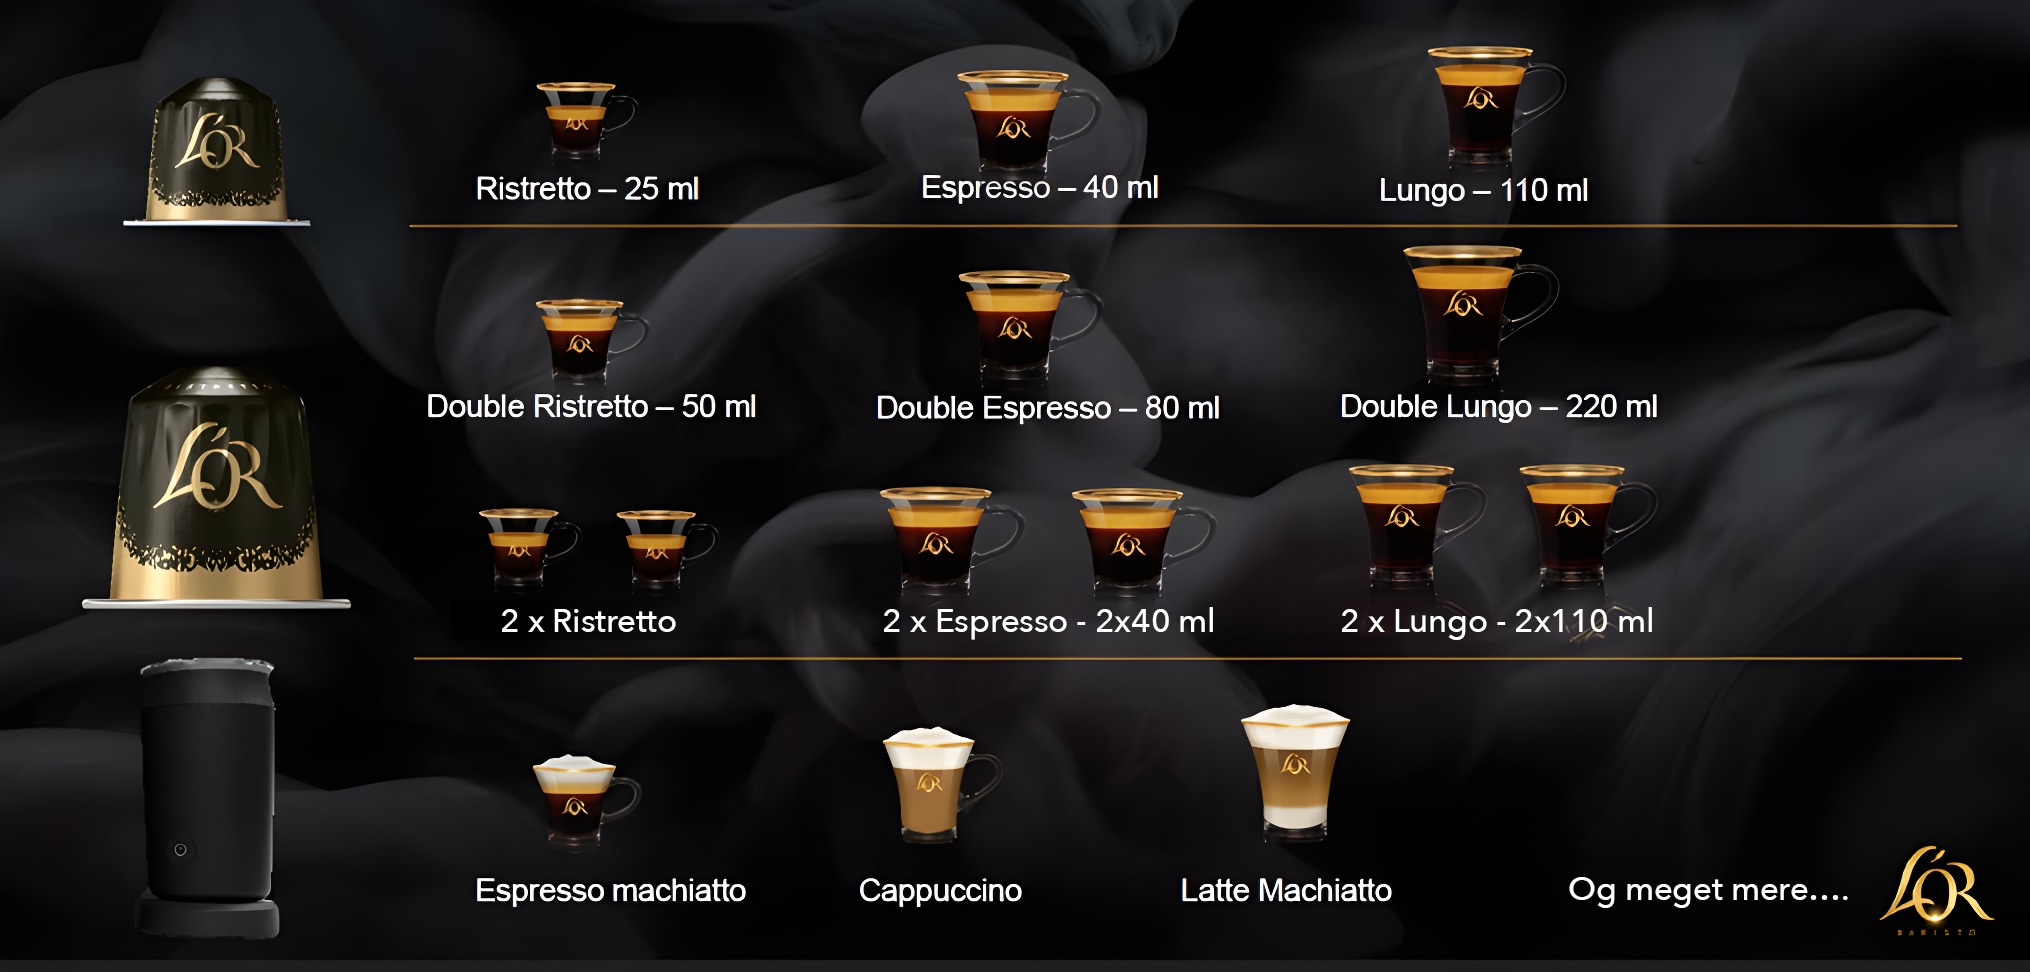 L'OR kaffemenu, der viser de mange forskellige smagsmuligheder